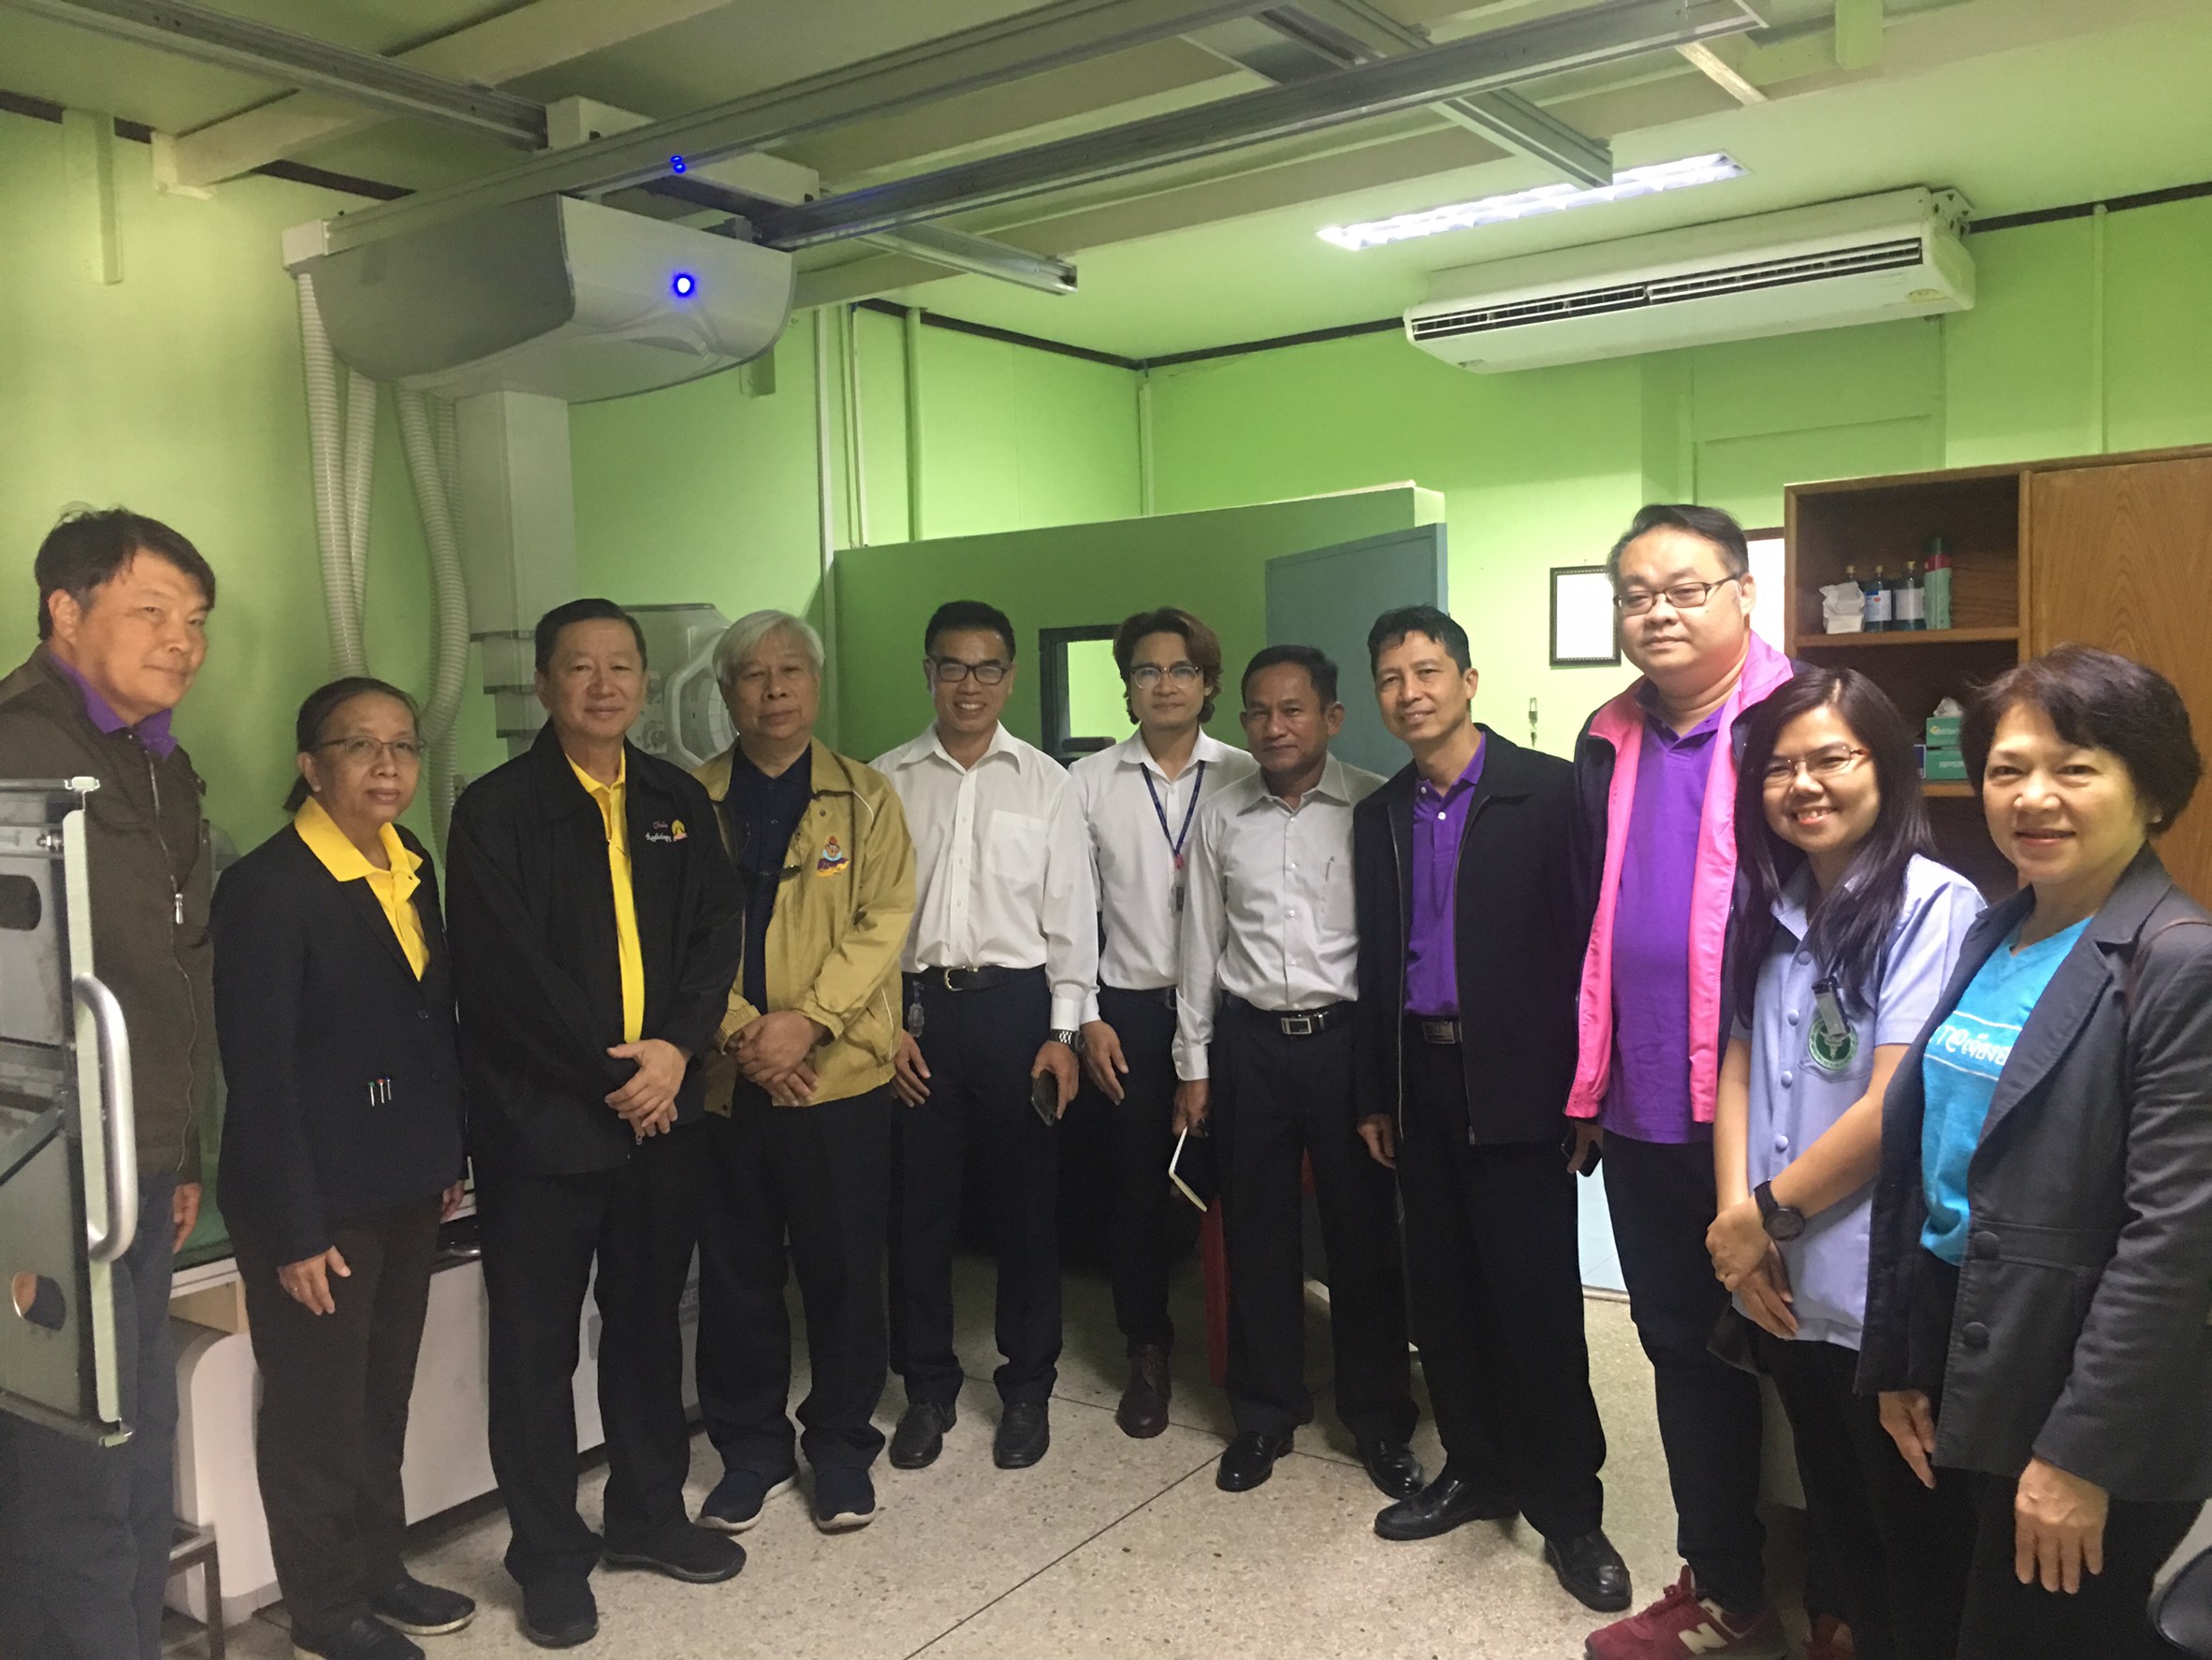 ประชุมวิชาการร่วมกับรังสีการแพทย์แห่งประเทศไทย ครั้งที่17 27-29 พ.ย. - พร้อมเข้าเยี่ยมและให้กำลังใจหน่วยงานรังสีวิทยาในพื้นที่จังหวัดอุบลราชธานีระหว่างวันที่ 25-26 พฤศจิกายน 2562 84